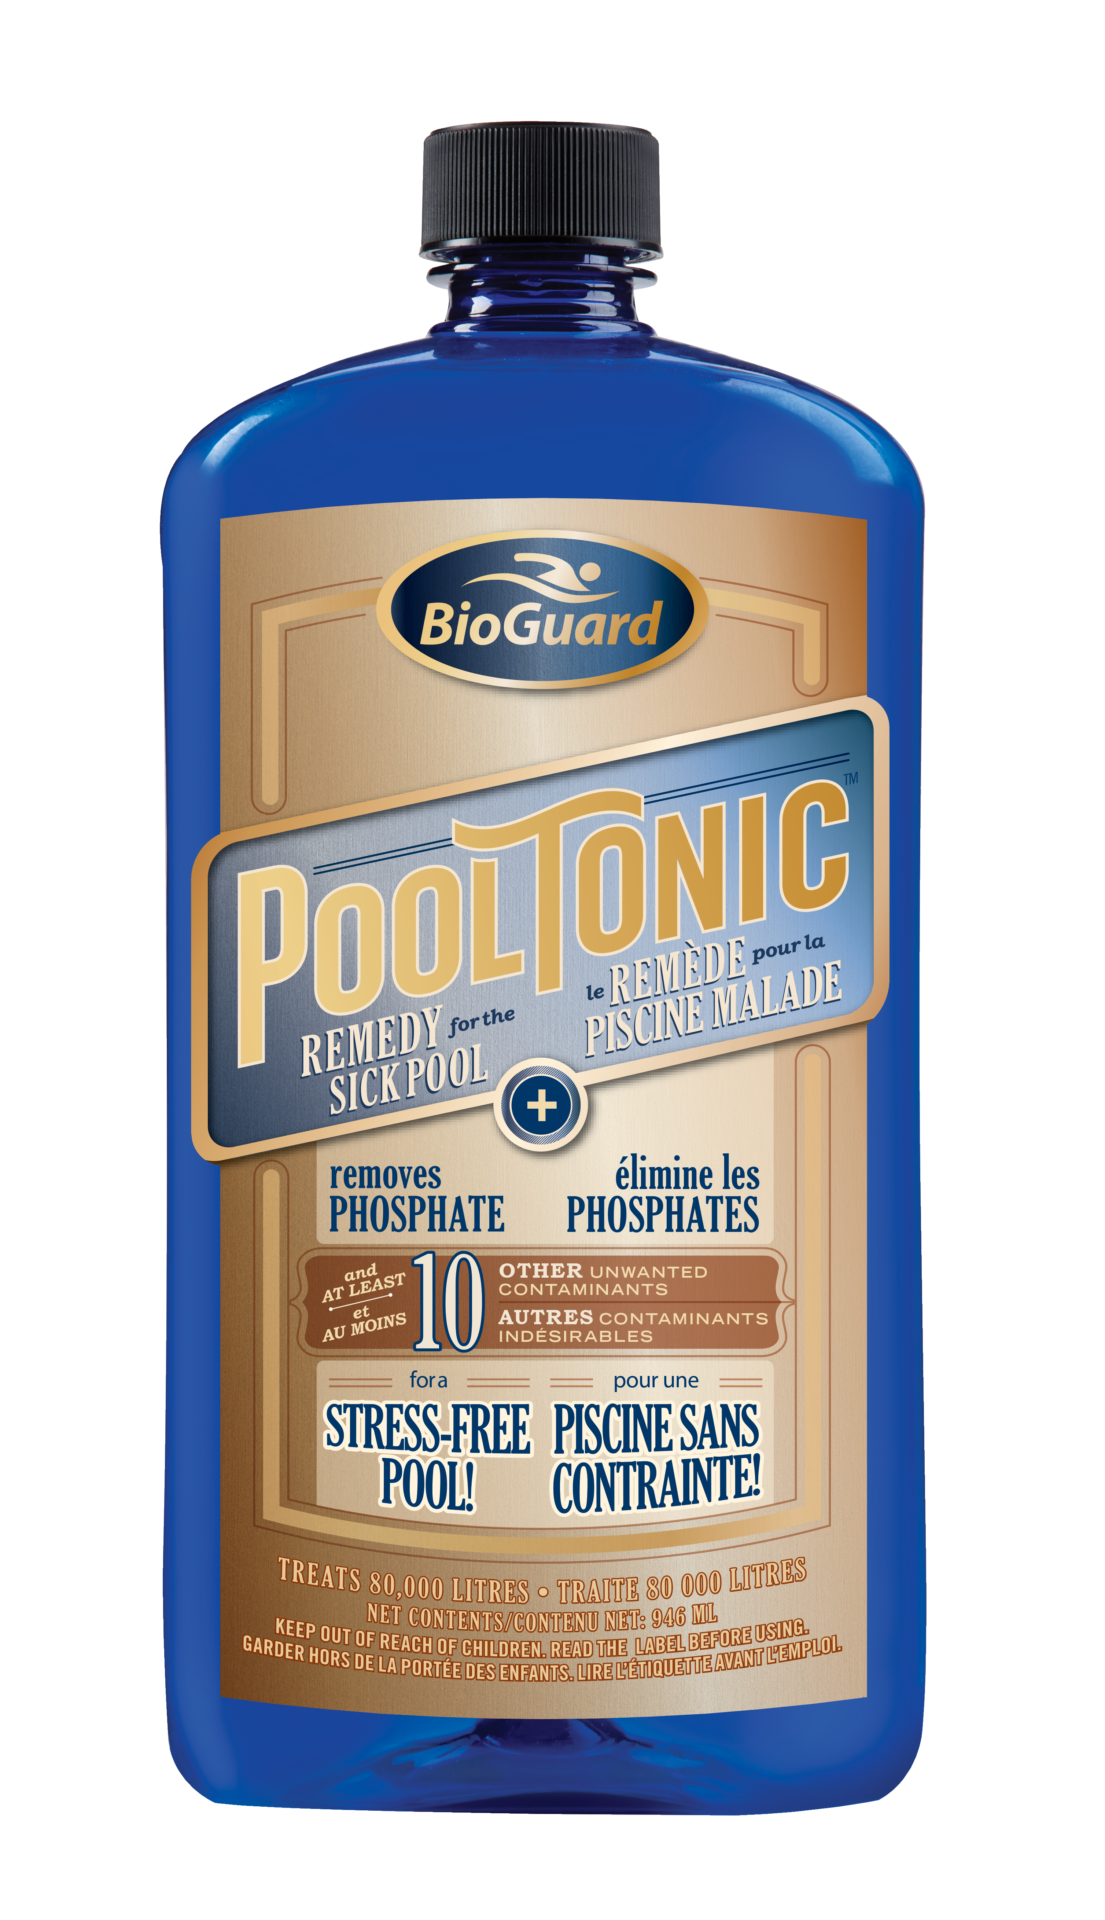 BioGuard Pool Tonic 946ml - BioGuard Pool Tonic 946ml